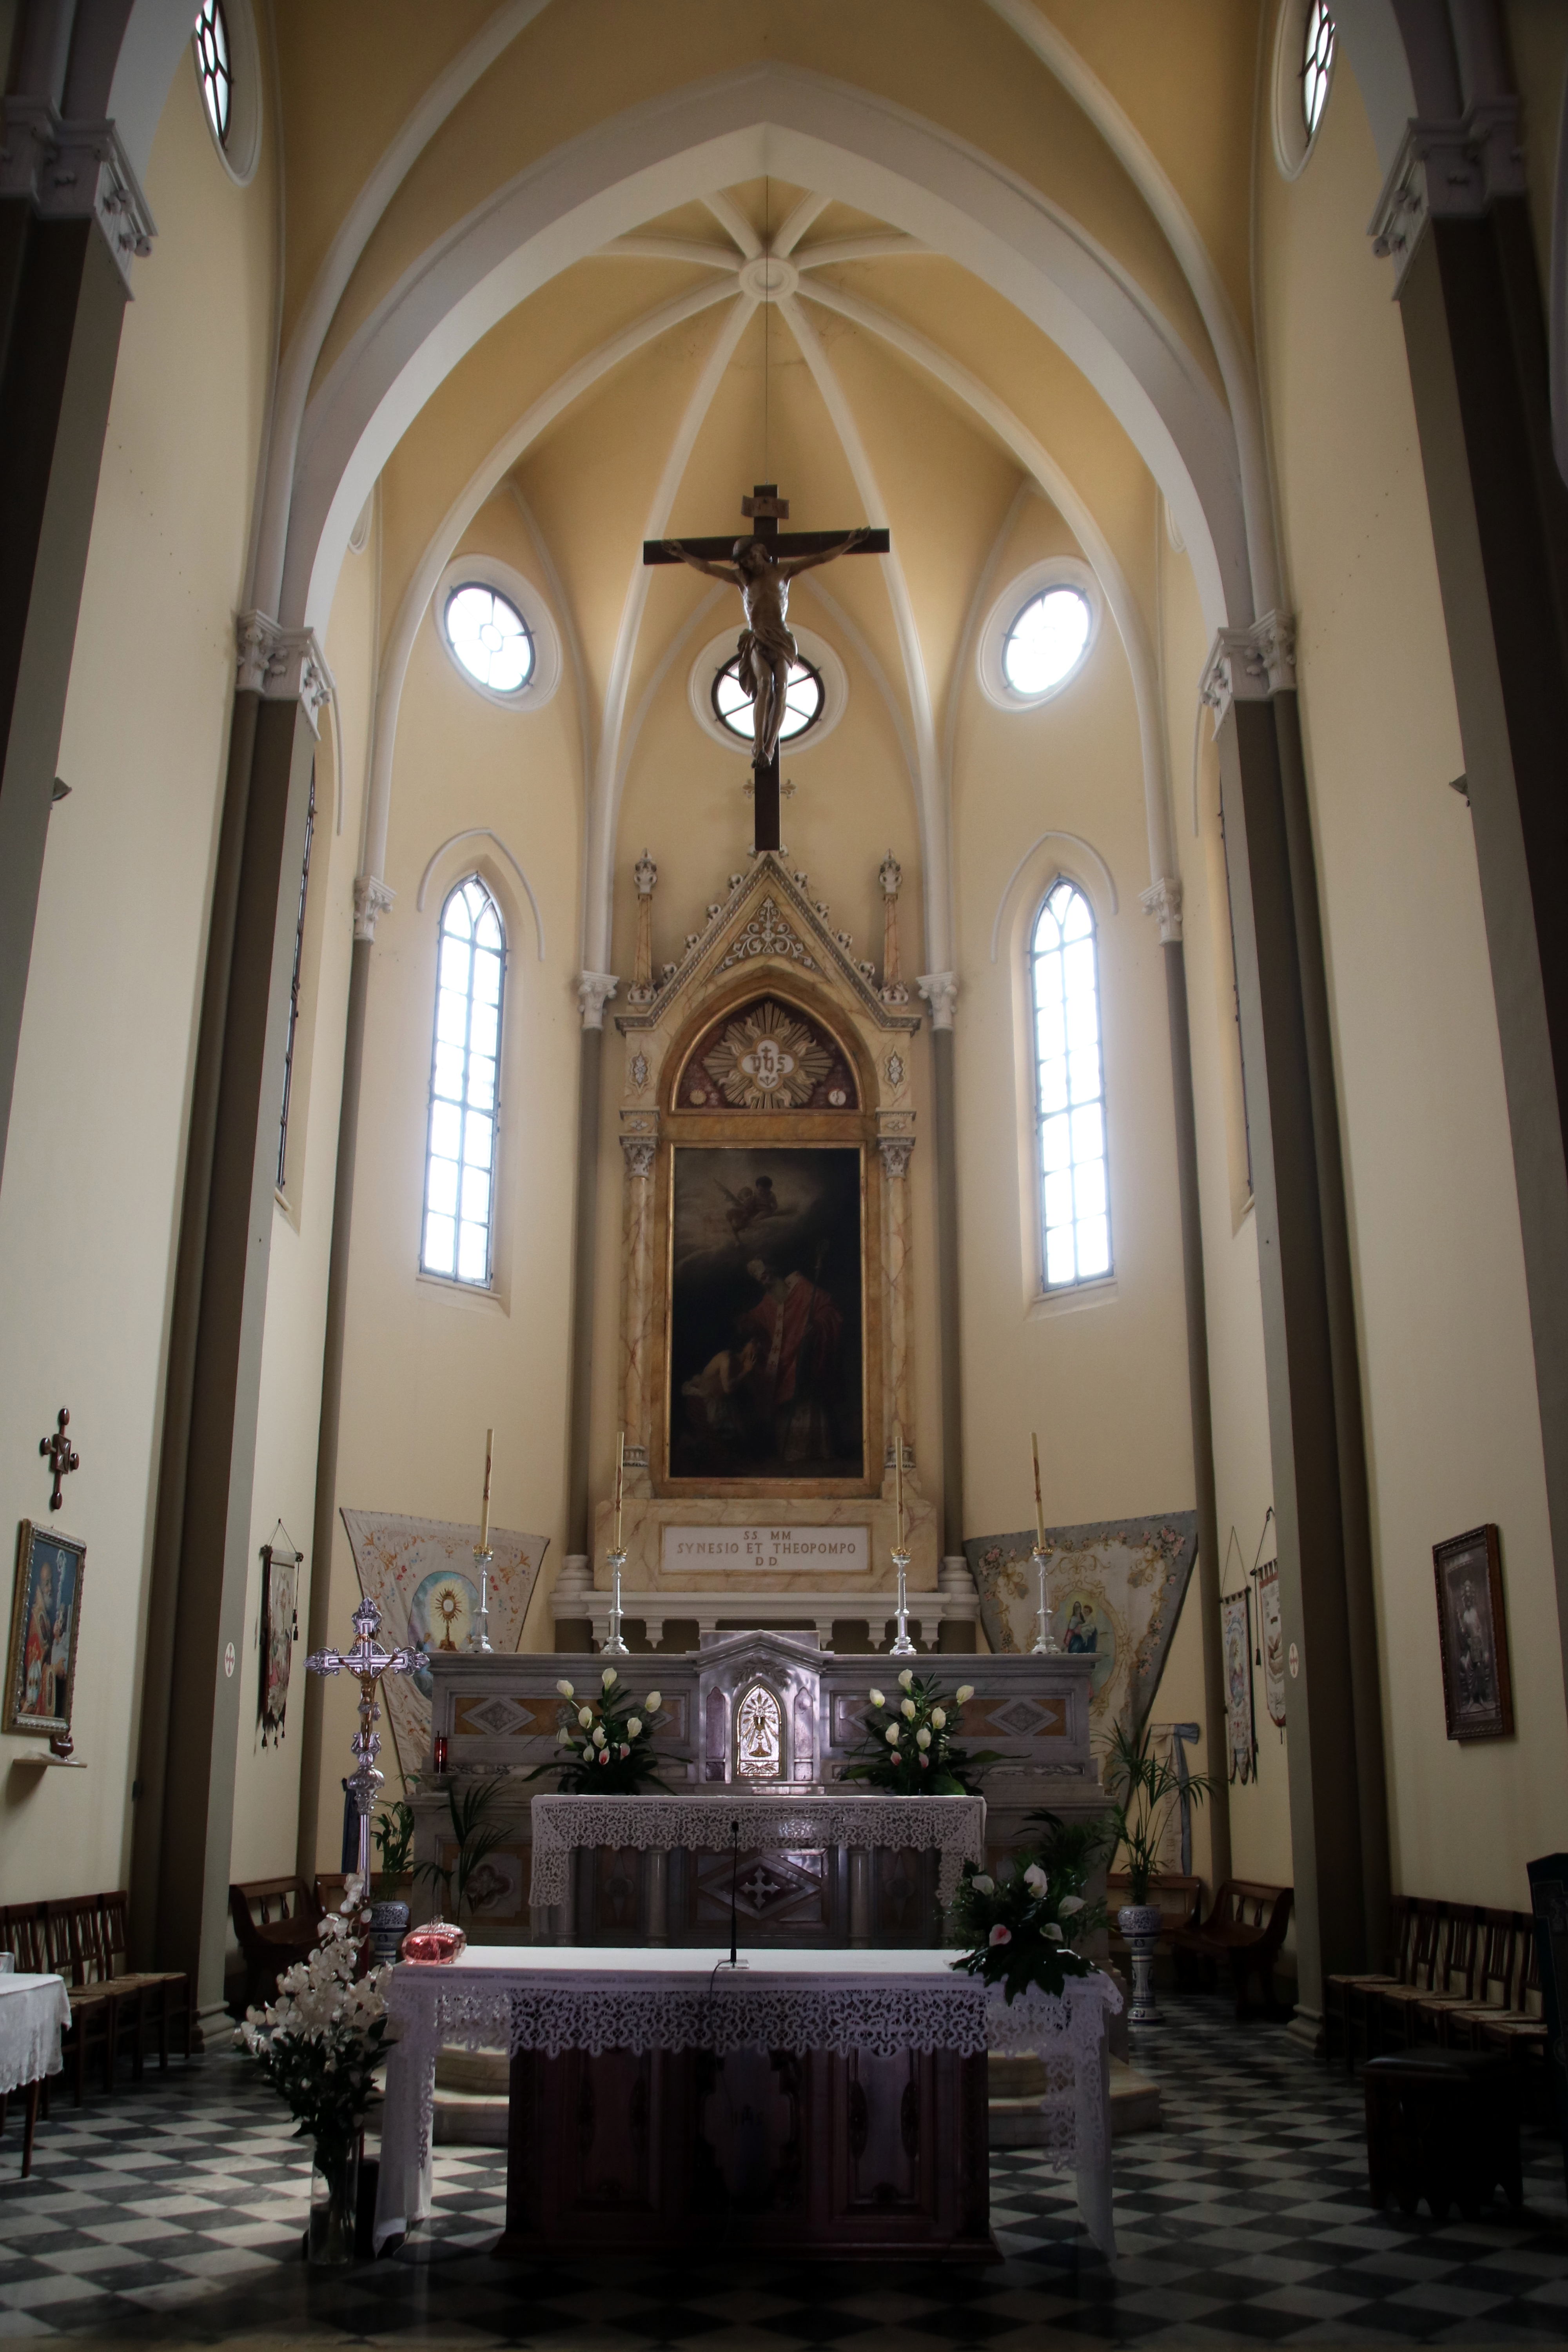 photo: https://upload.wikimedia.org/wikipedia/commons/8/8f/Chiesa_dei_Santi_Senesio_e_Teopompo_%28Castelvetro_di_Modena%29%2C_altare_maggiore_01.jpg